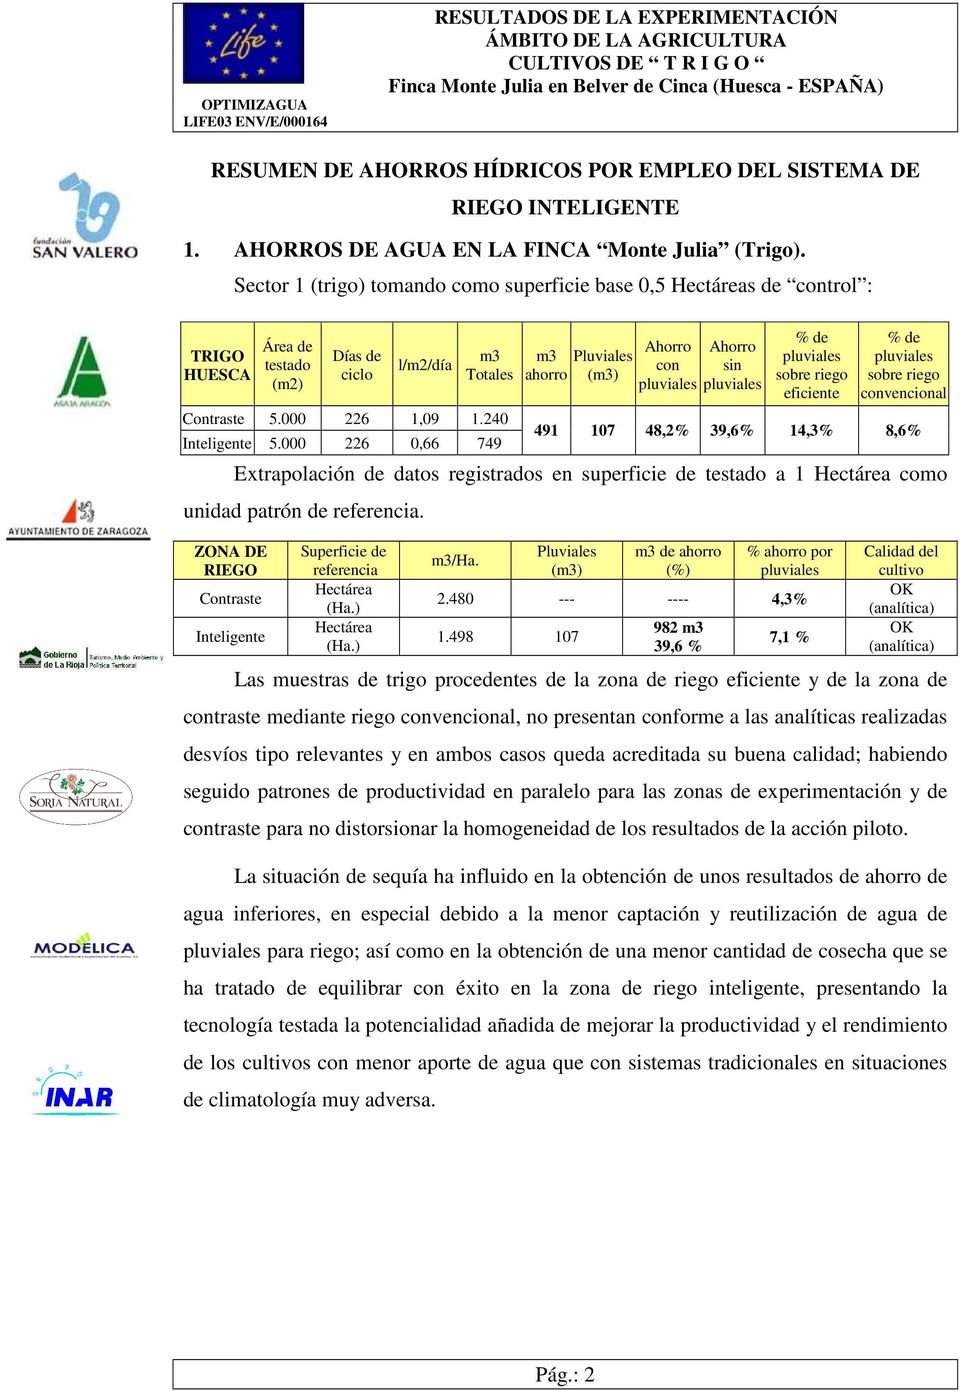 ZONA DE RIEGO Contraste Inteligente Área de testado (m2) Días de ciclo Superficie de referencia Hectárea (Ha.) Hectárea (Ha.) l/m2/día m3/ha. Pluviales (m3) m3 de ahorro (%) % ahorro por pluviales 2.